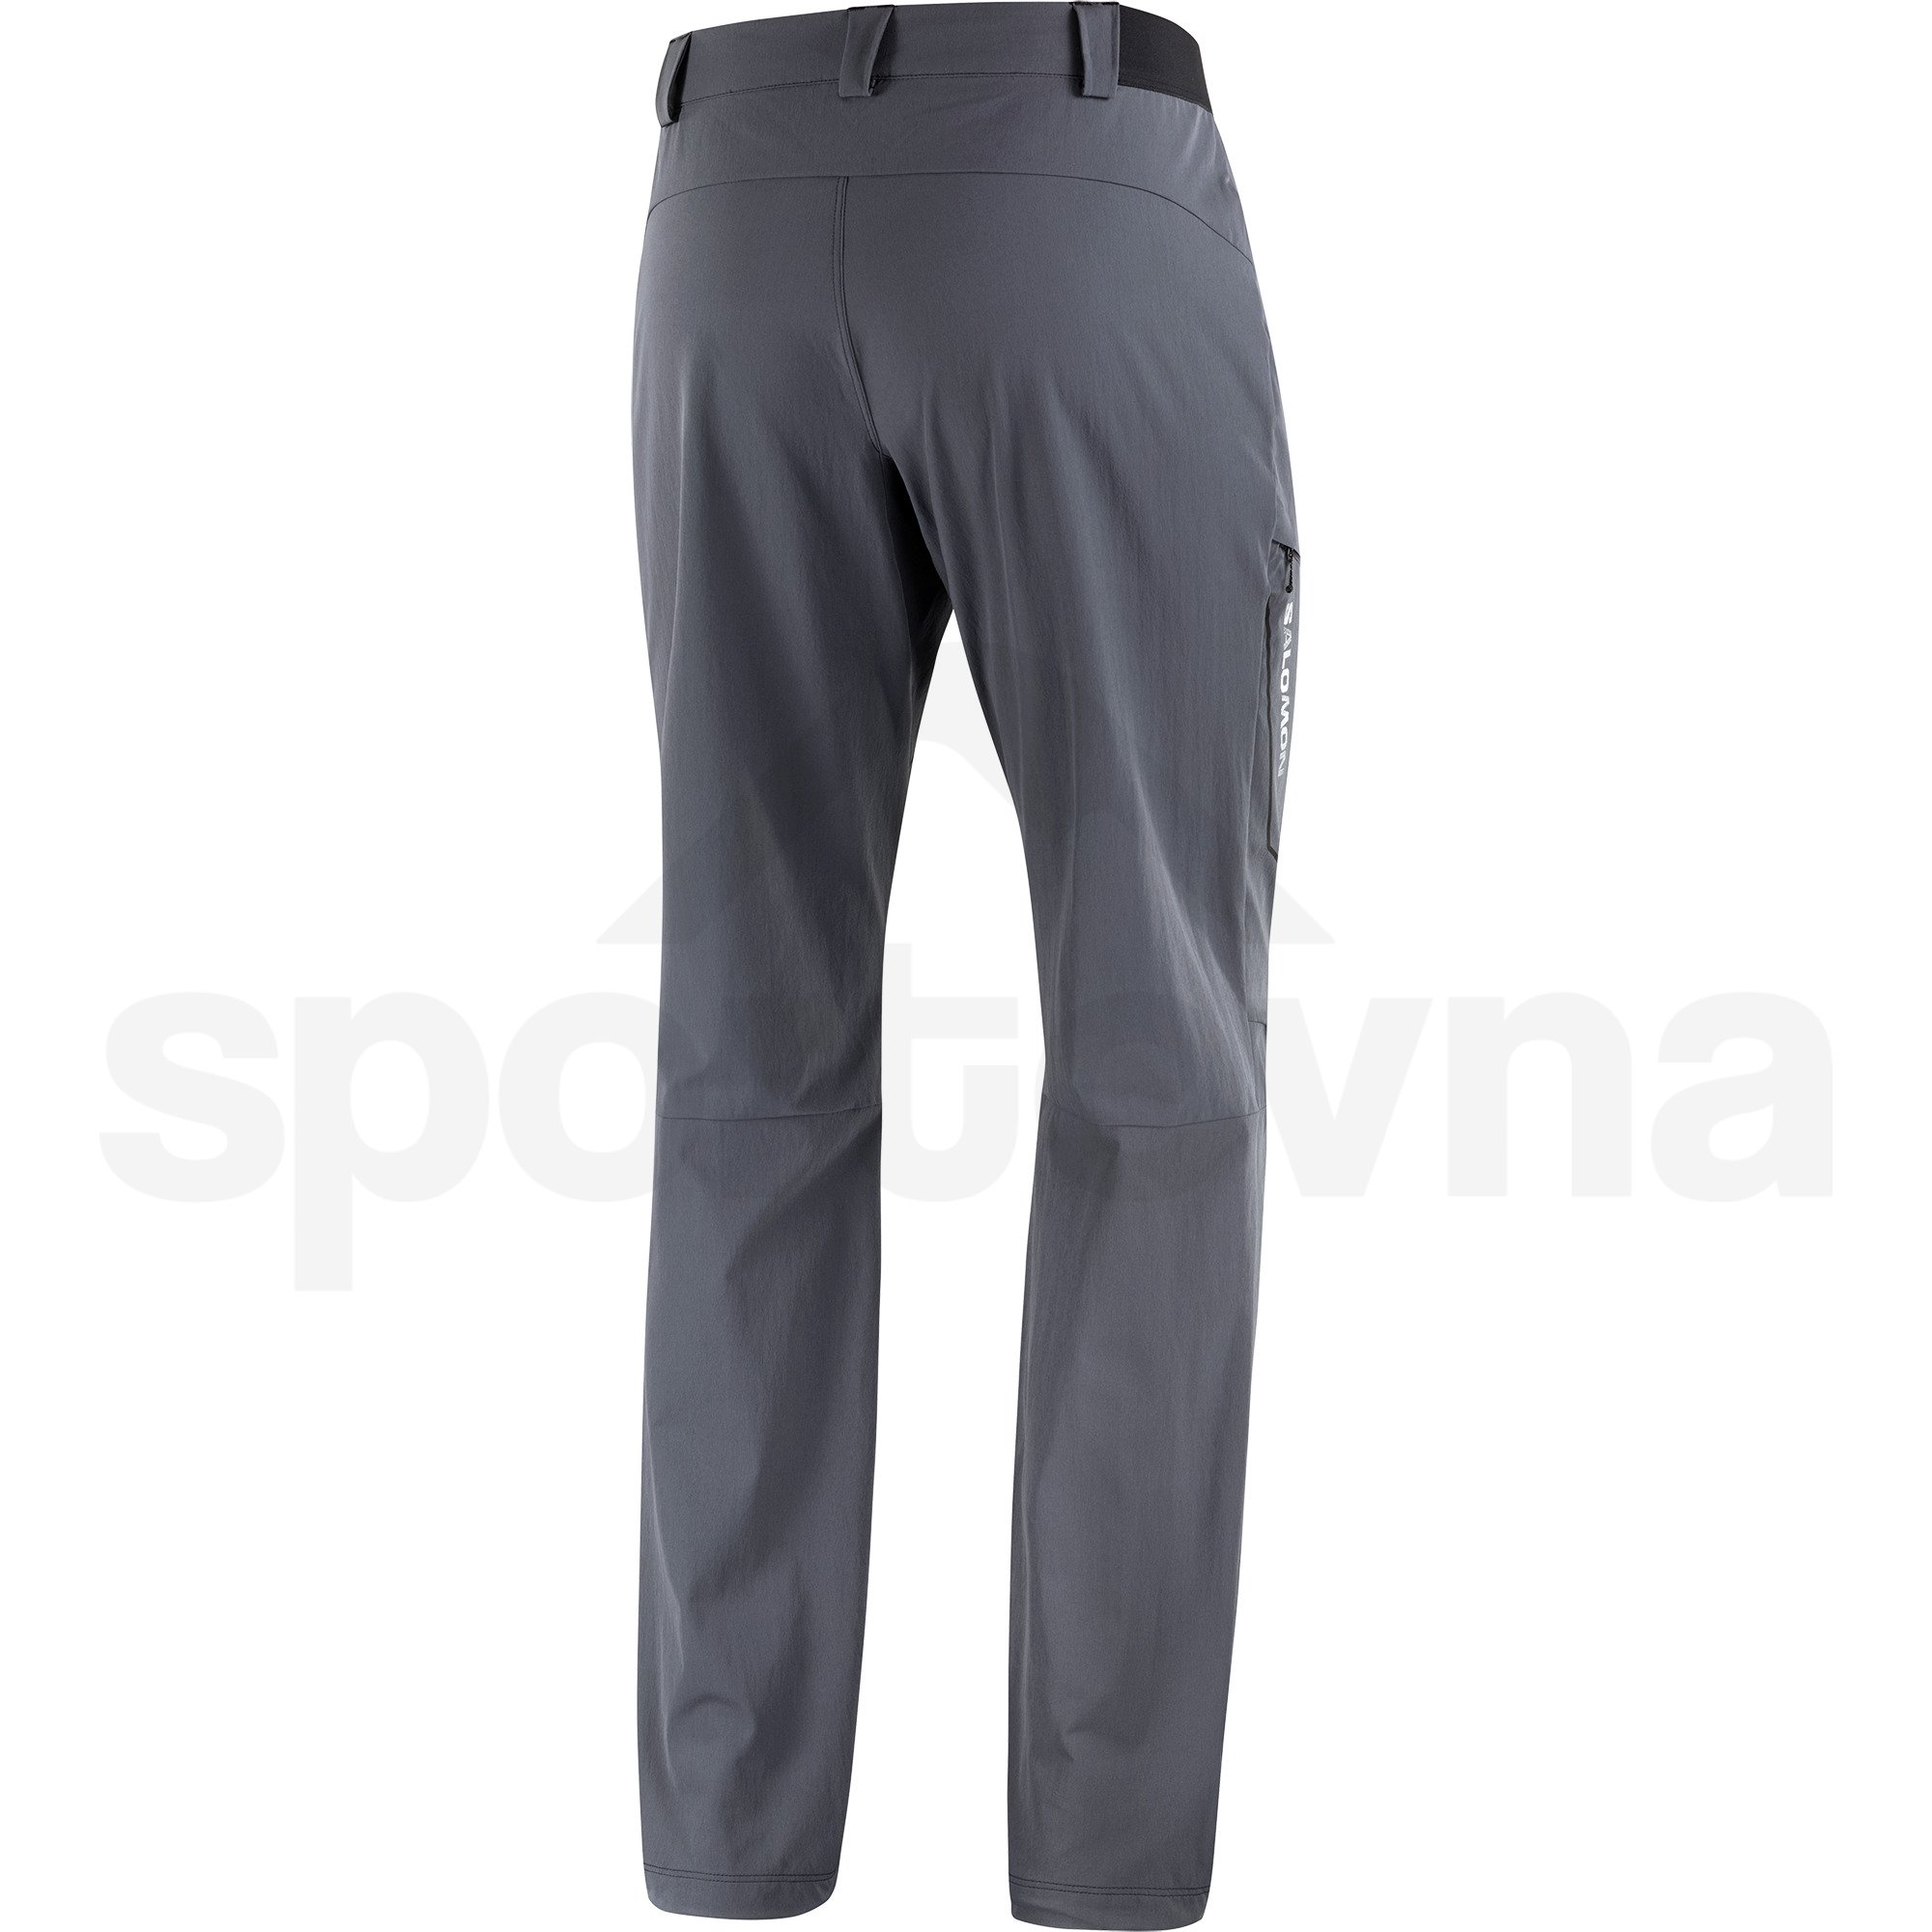 Kalhoty Salomon Wayfarer Pants M - šedá (prodloužená délka)